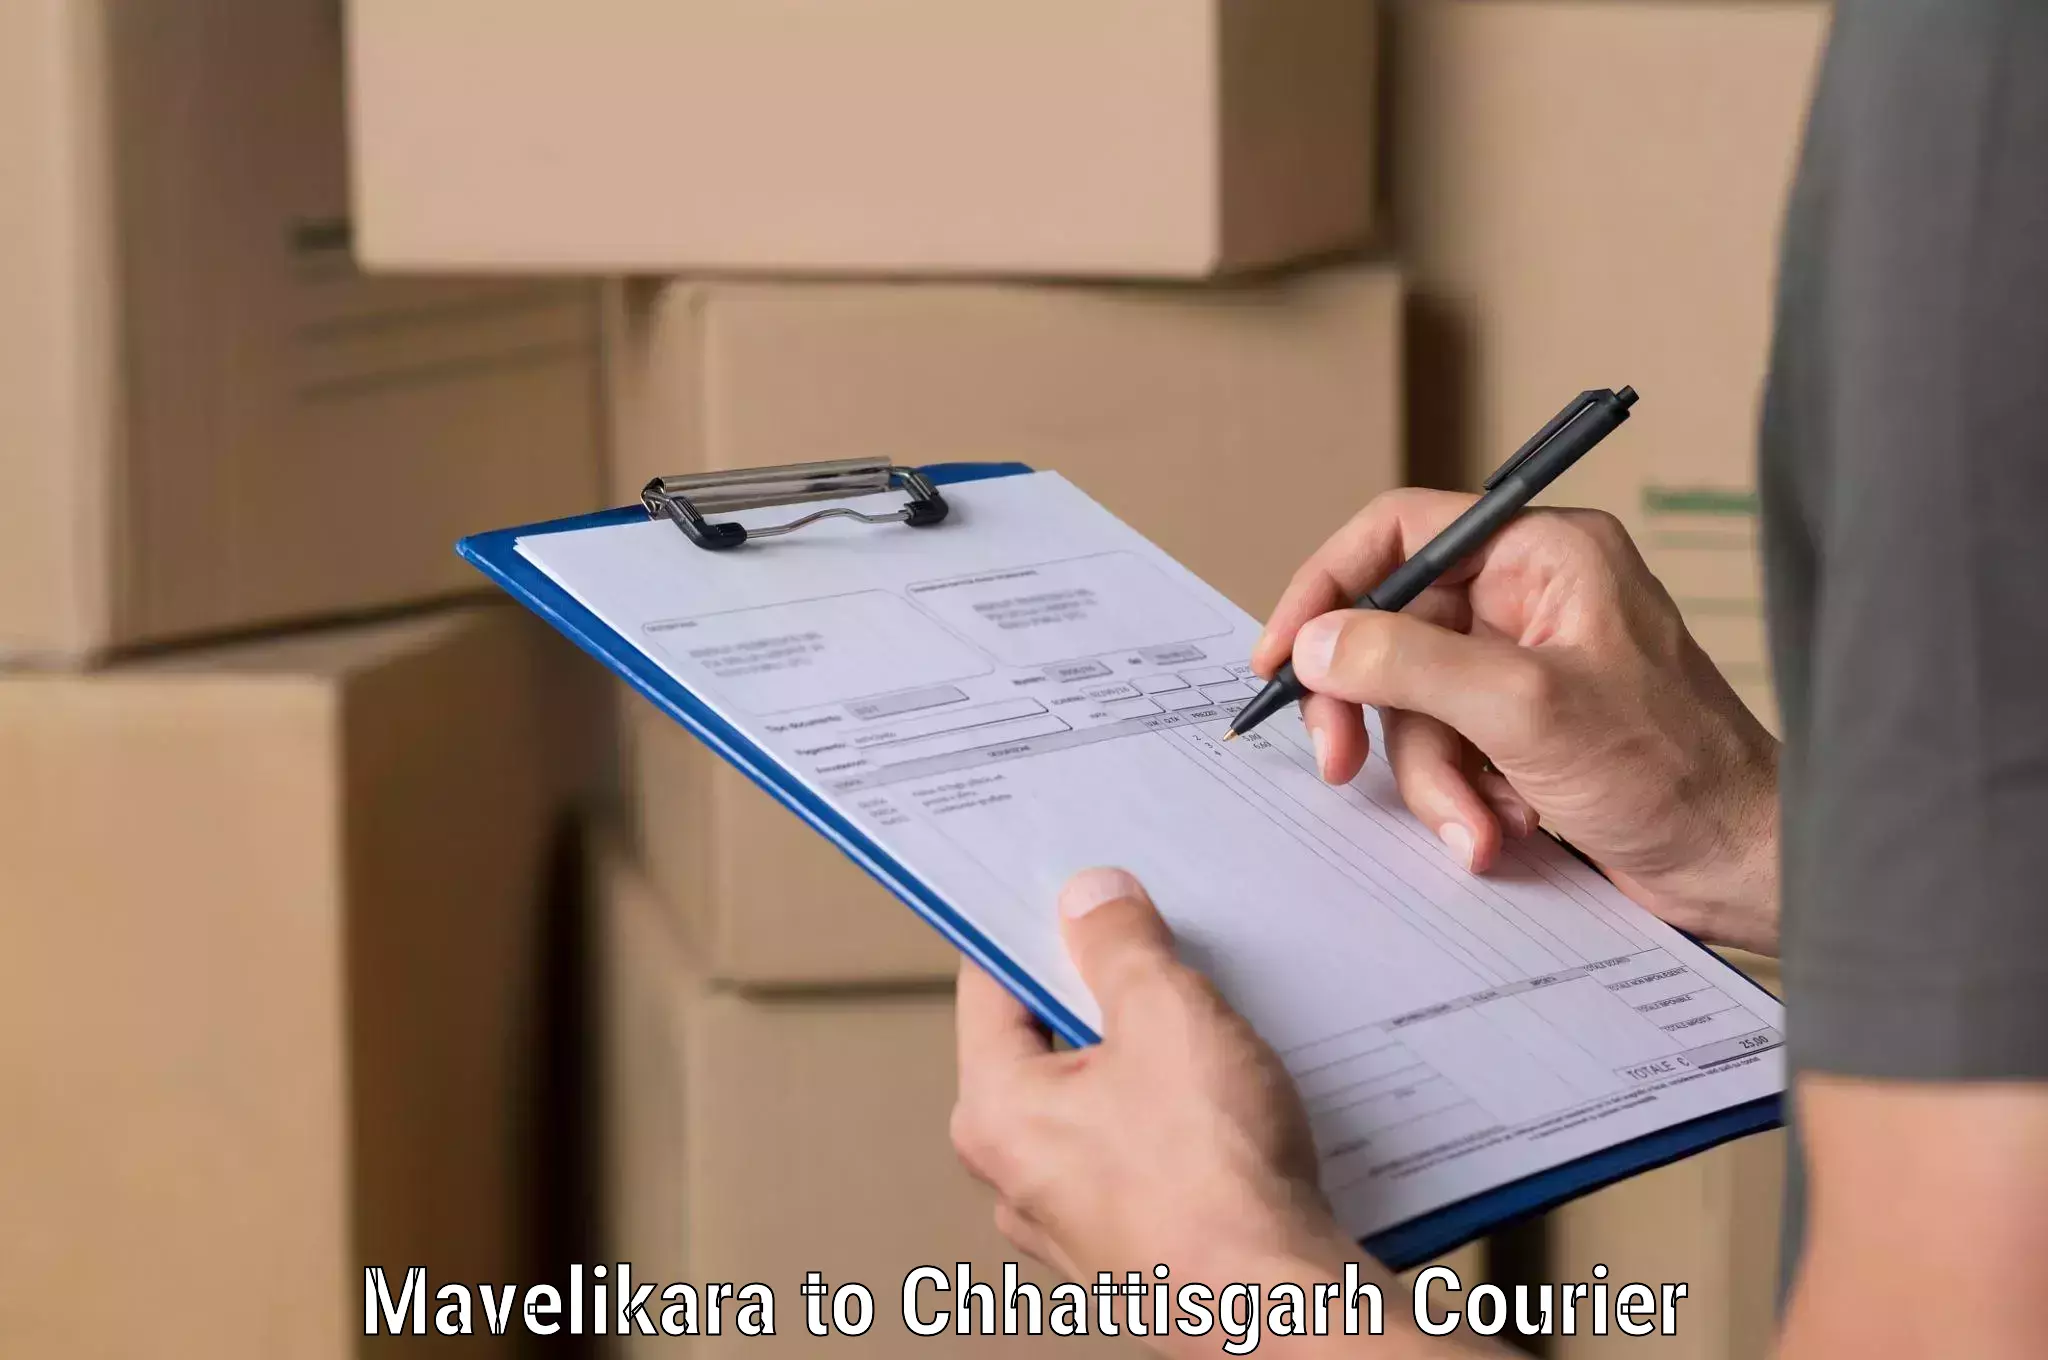 Global courier networks Mavelikara to Kharsia